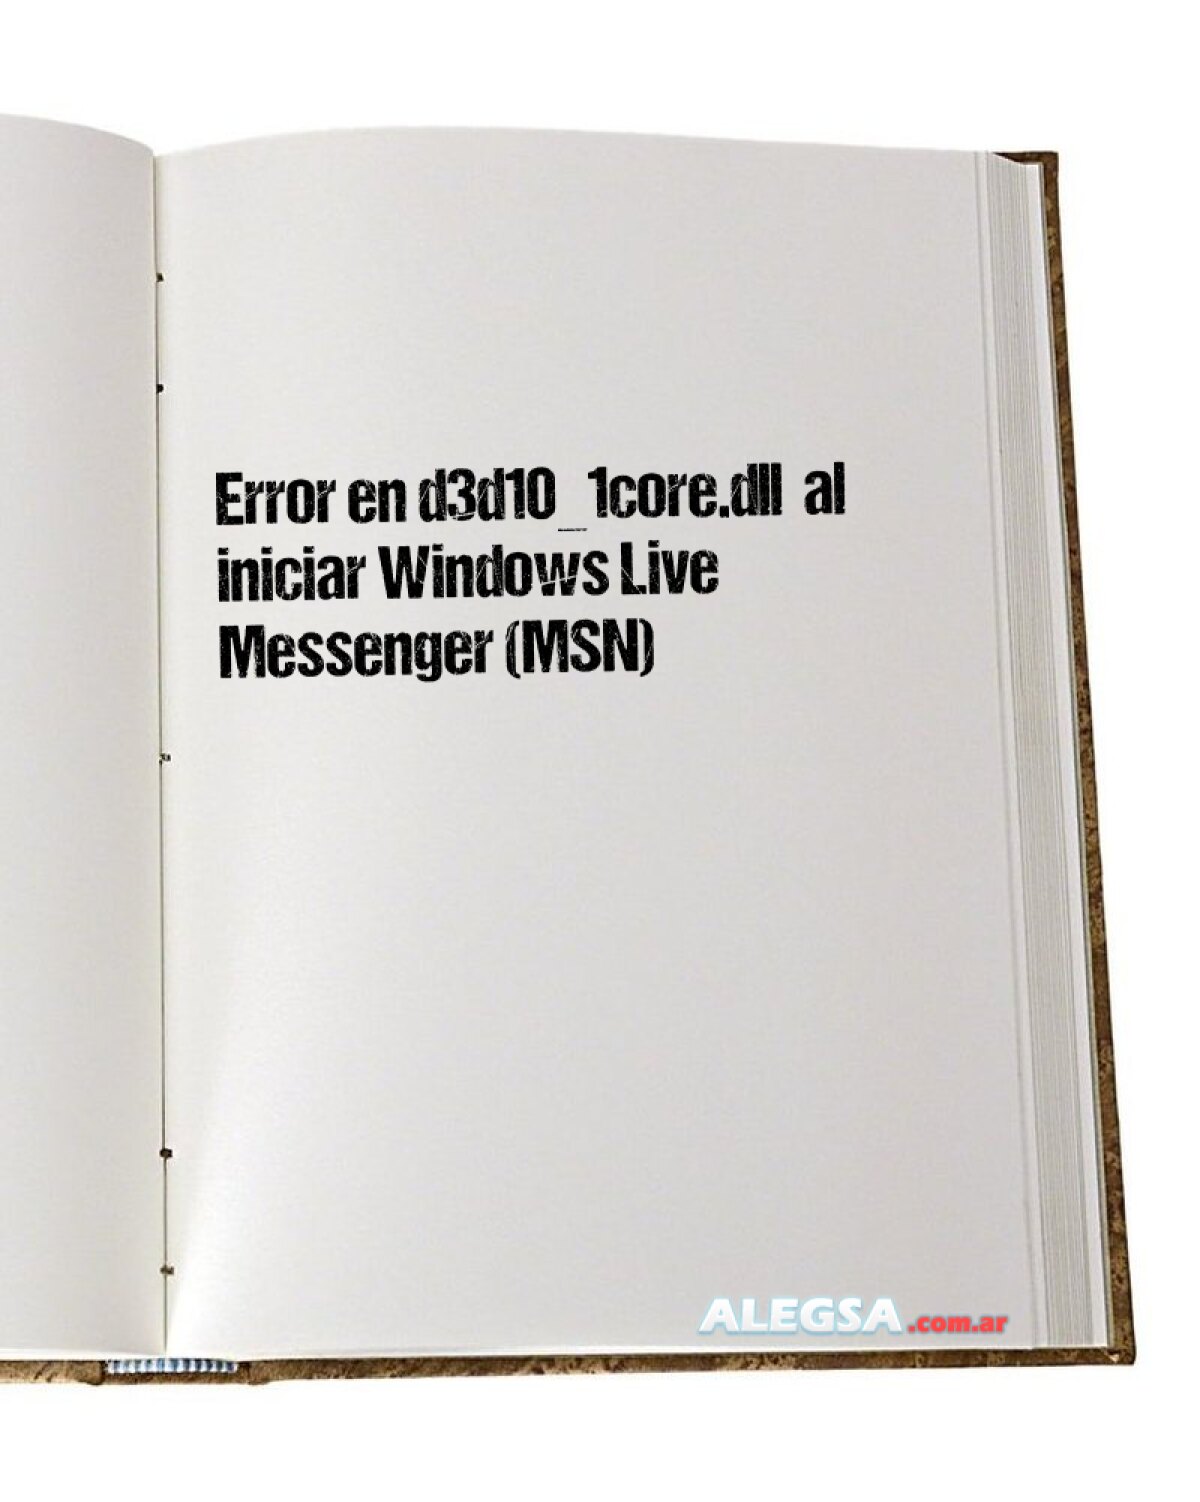 Error en d3d10_1core.dll  al iniciar Windows Live Messenger (MSN)